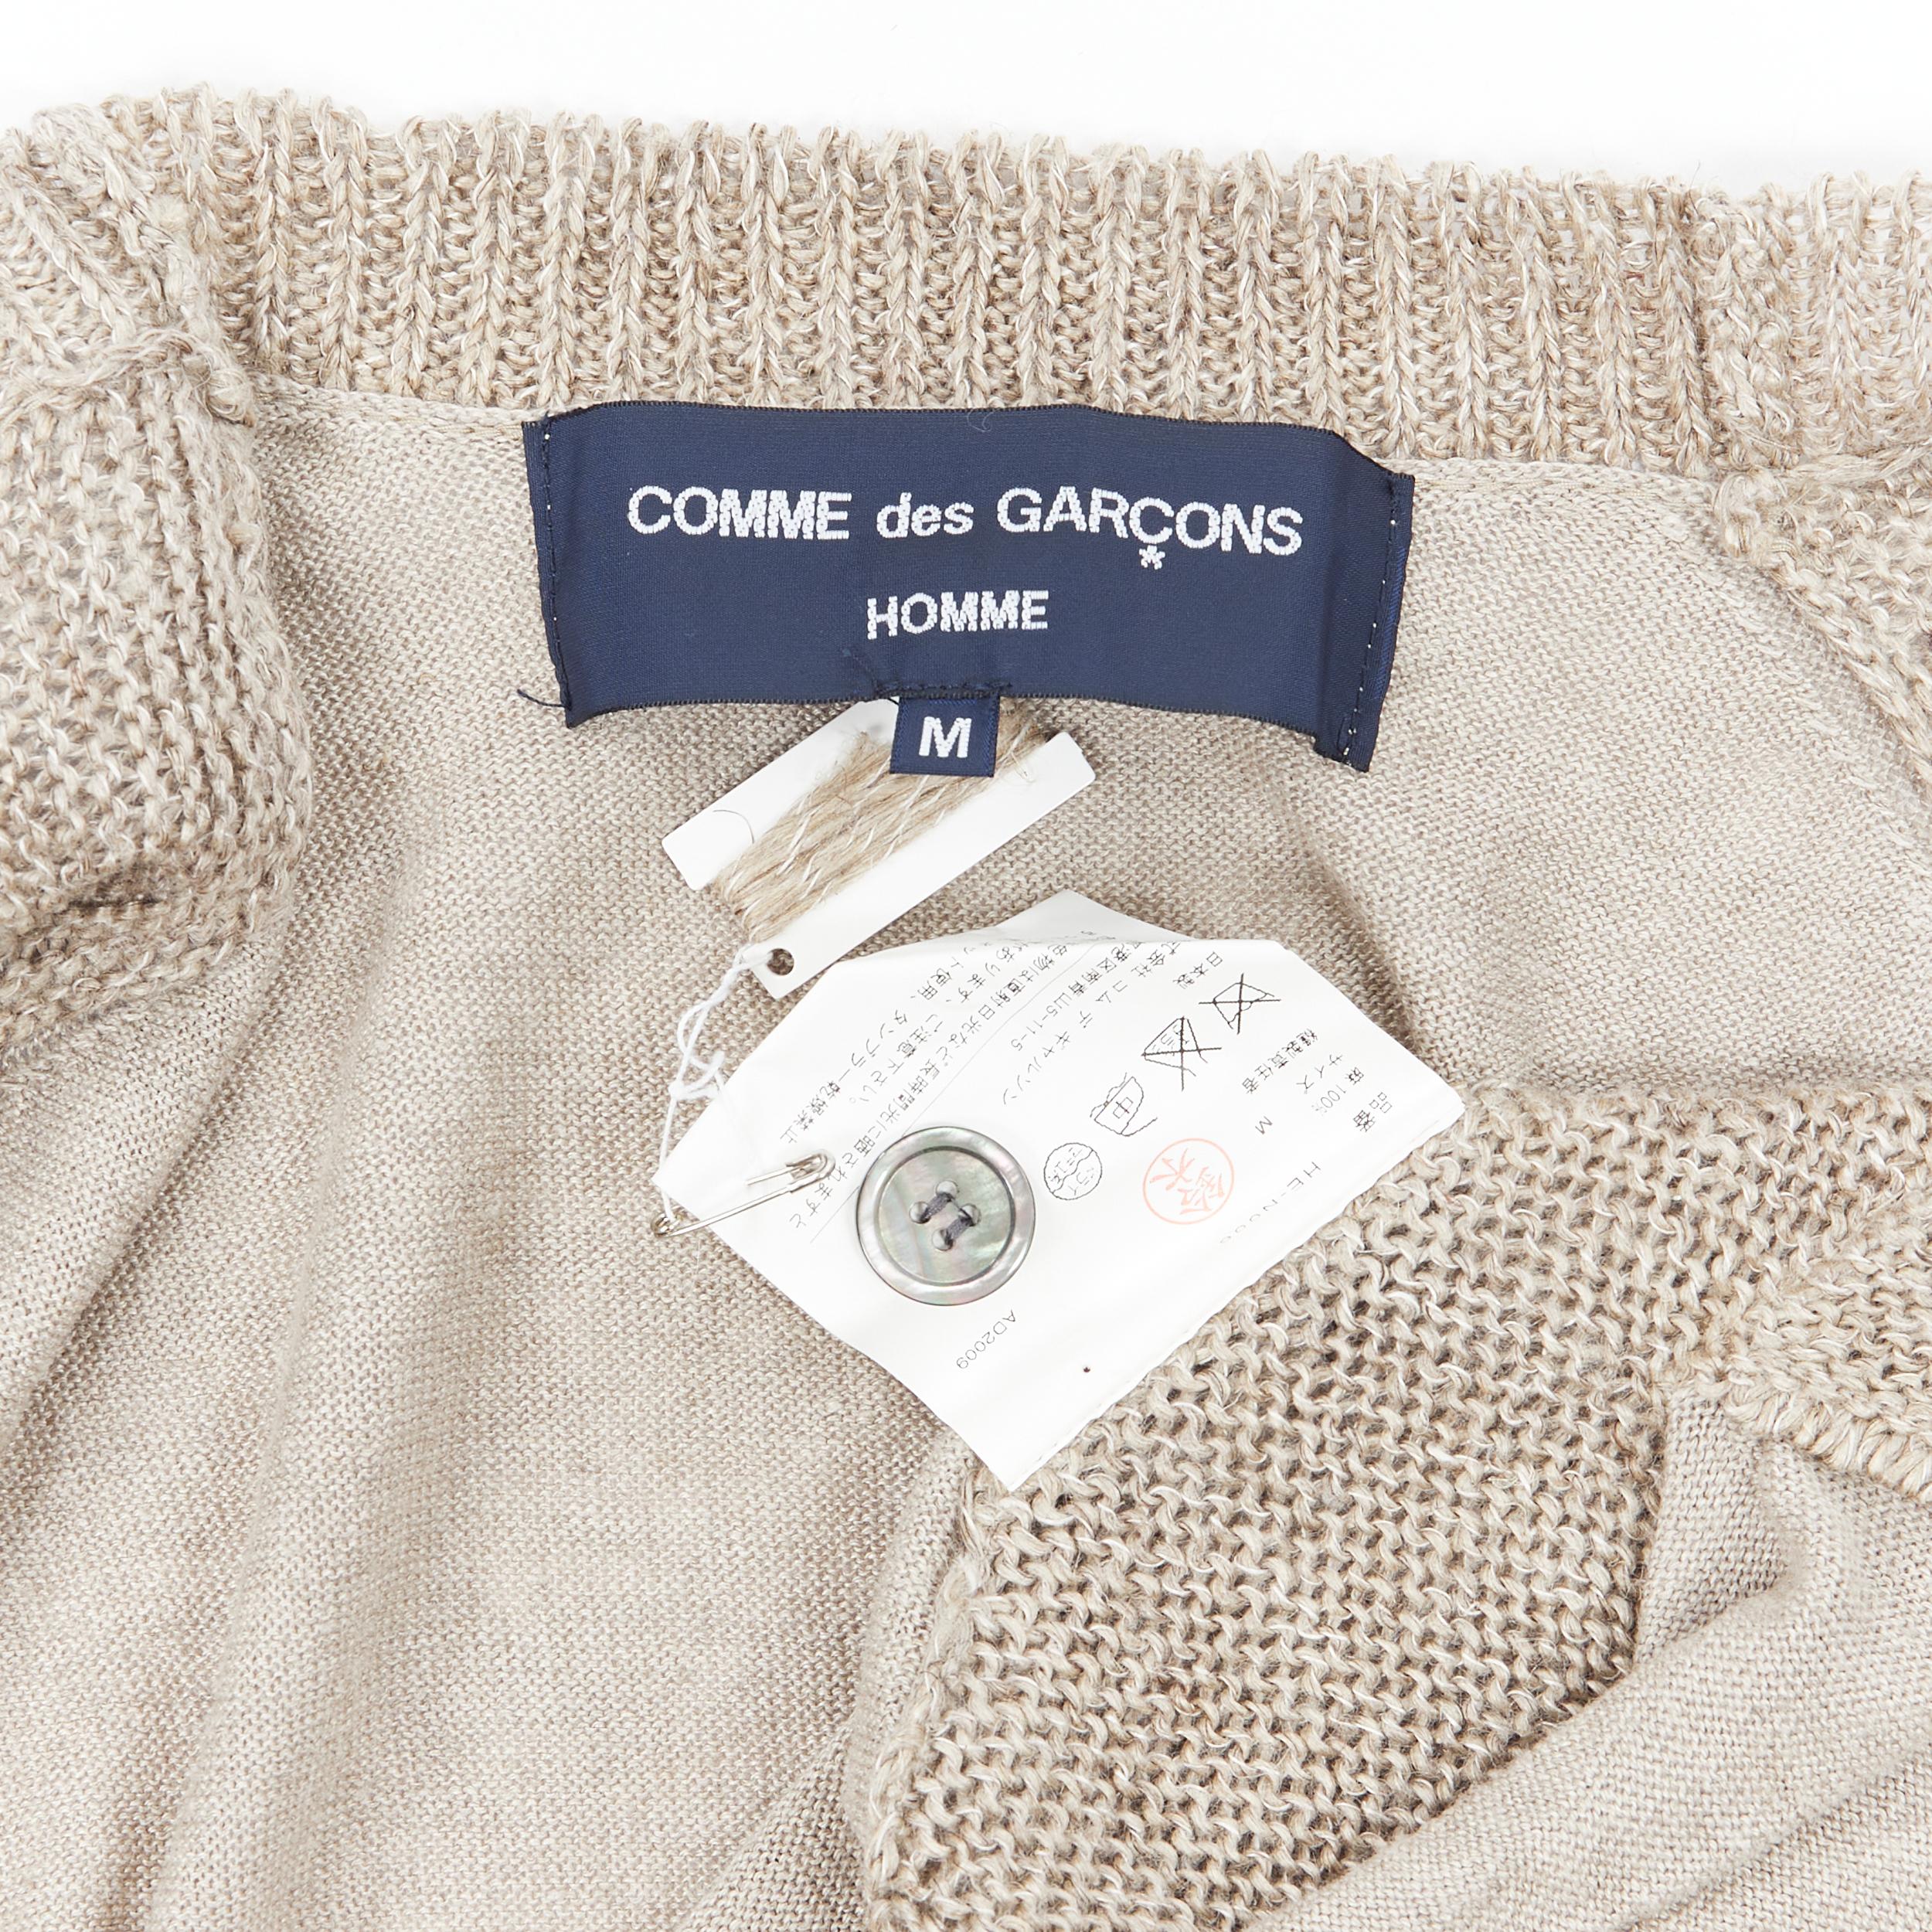 COMME DES GARCONS 2009 100% linen beige knit cardigan vest sweater M 3